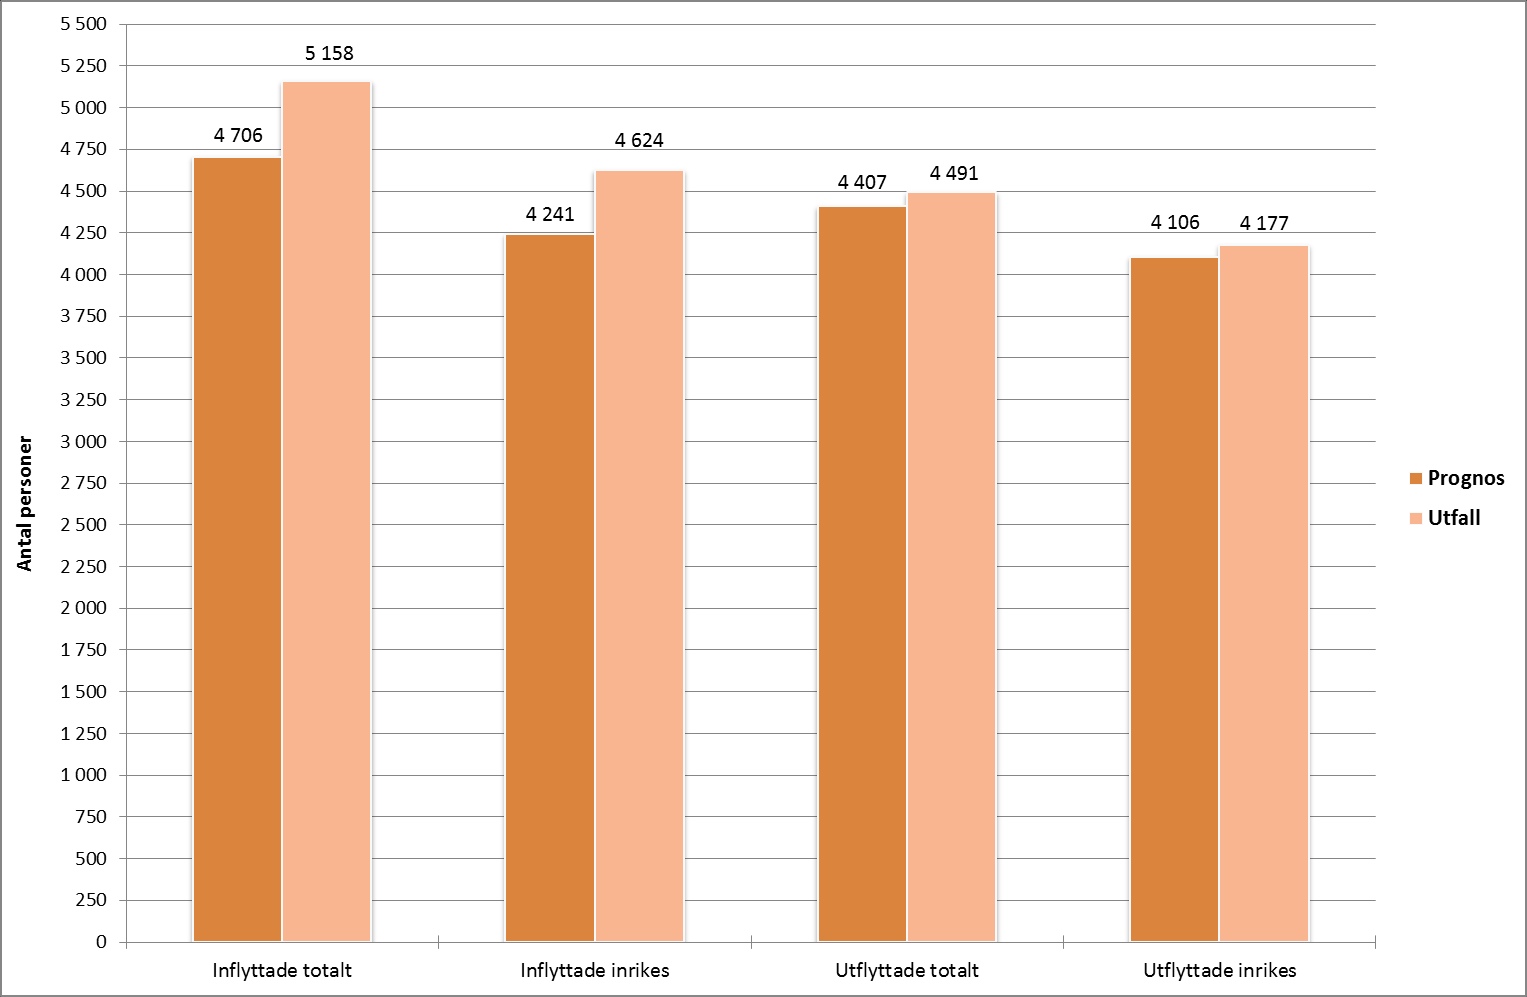 befolkningsprognos och utfall per 2014-12-31.